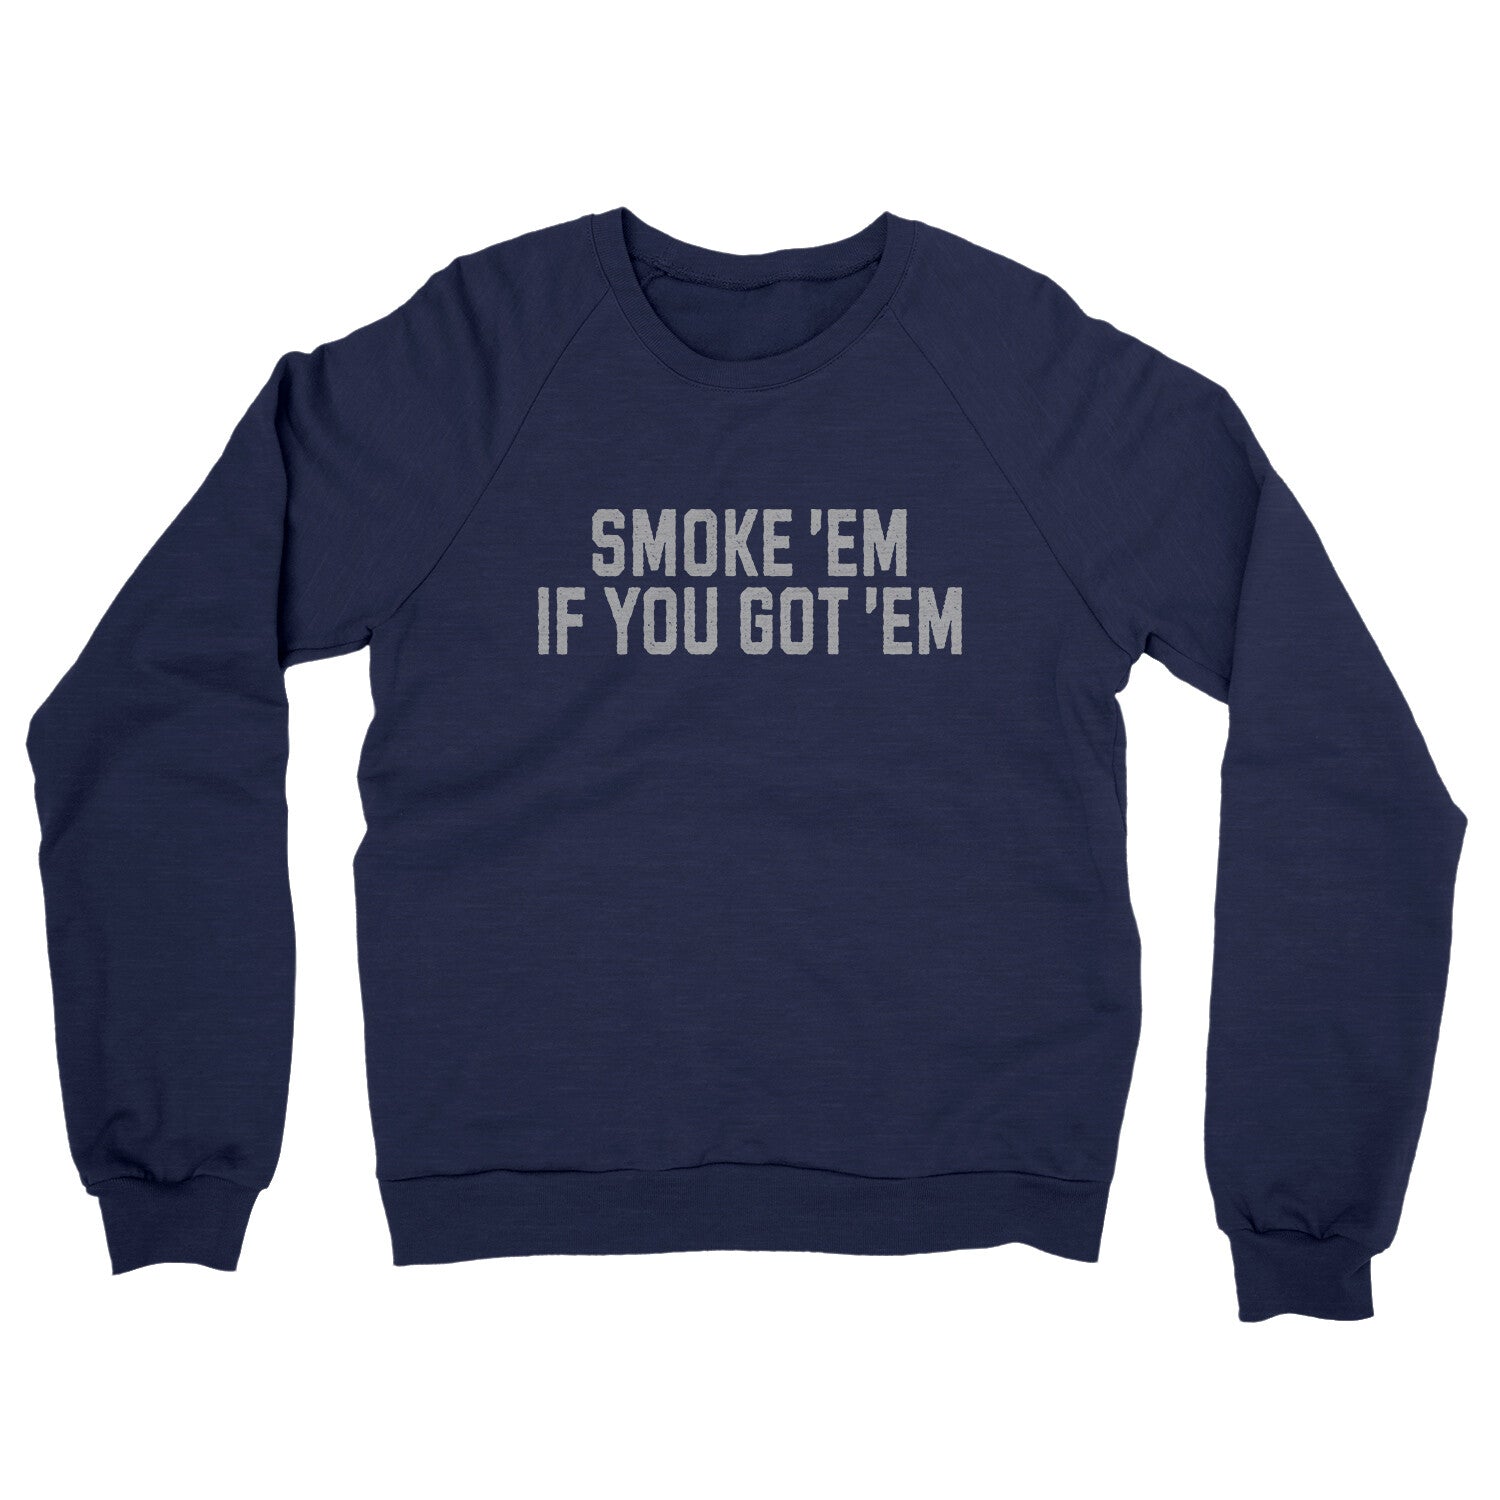 Smoke ‘em If you Got ‘em in Navy Color